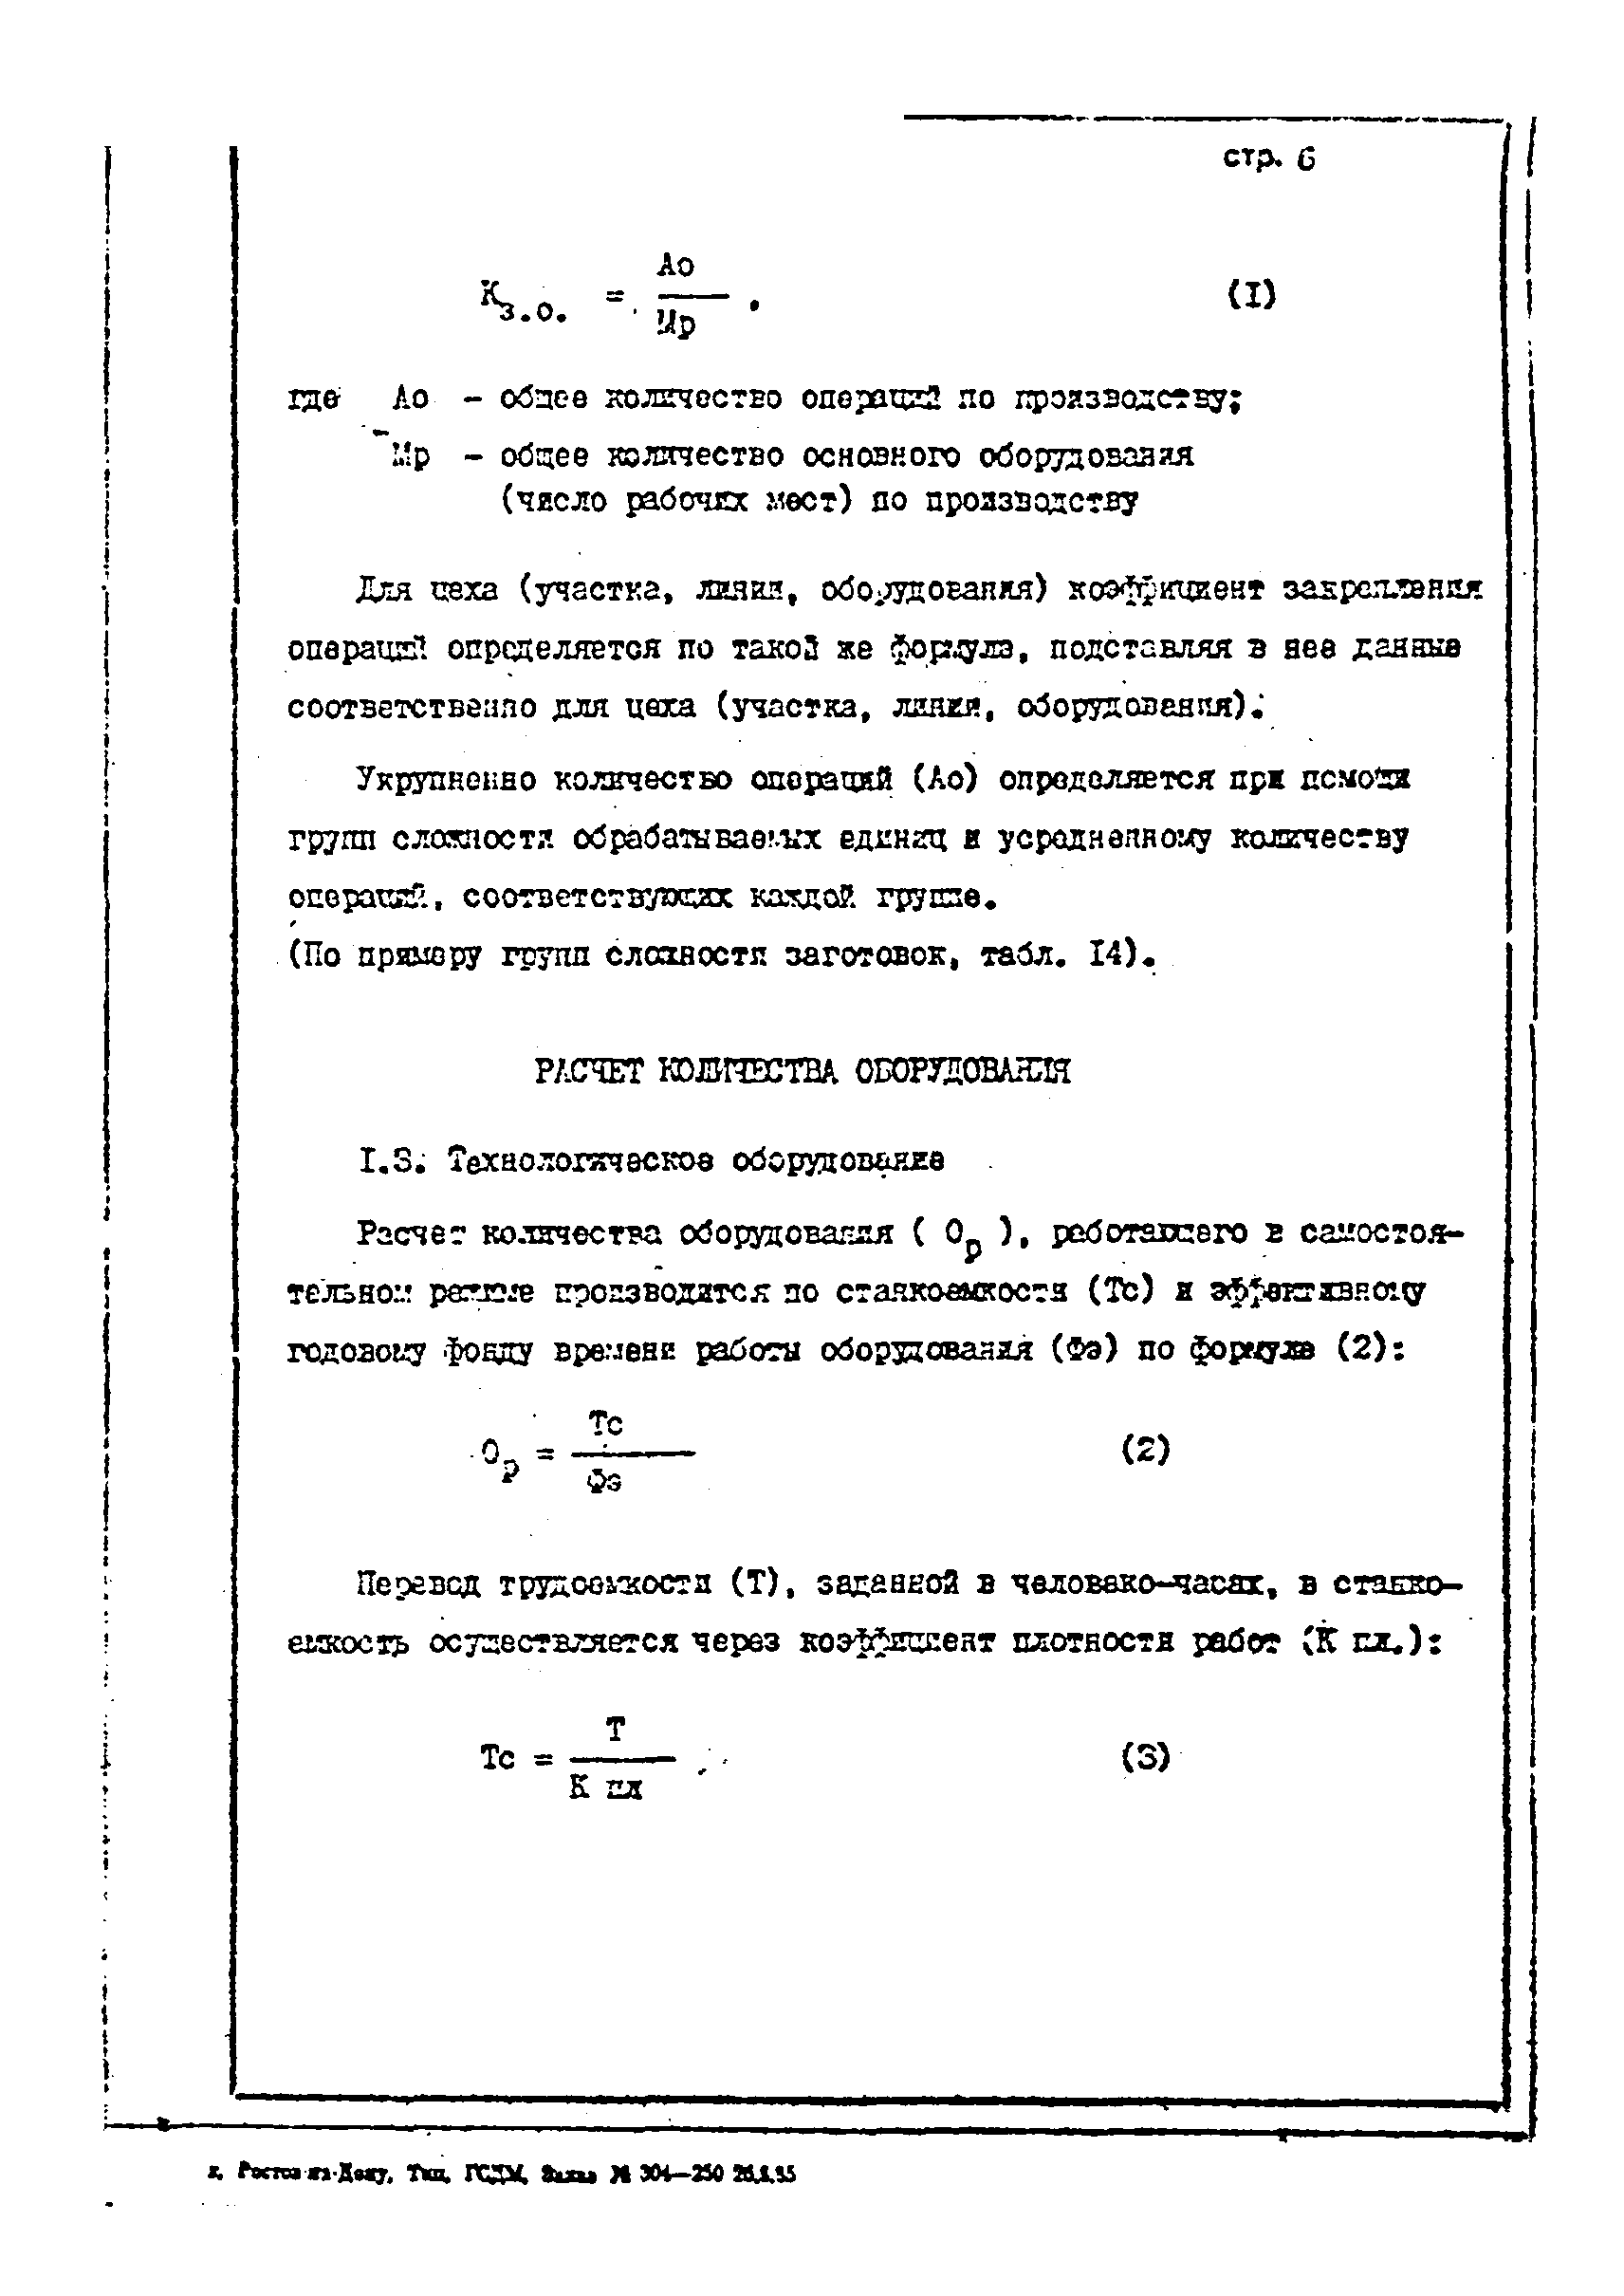 ОНТП 1-85/Минстройдормаш